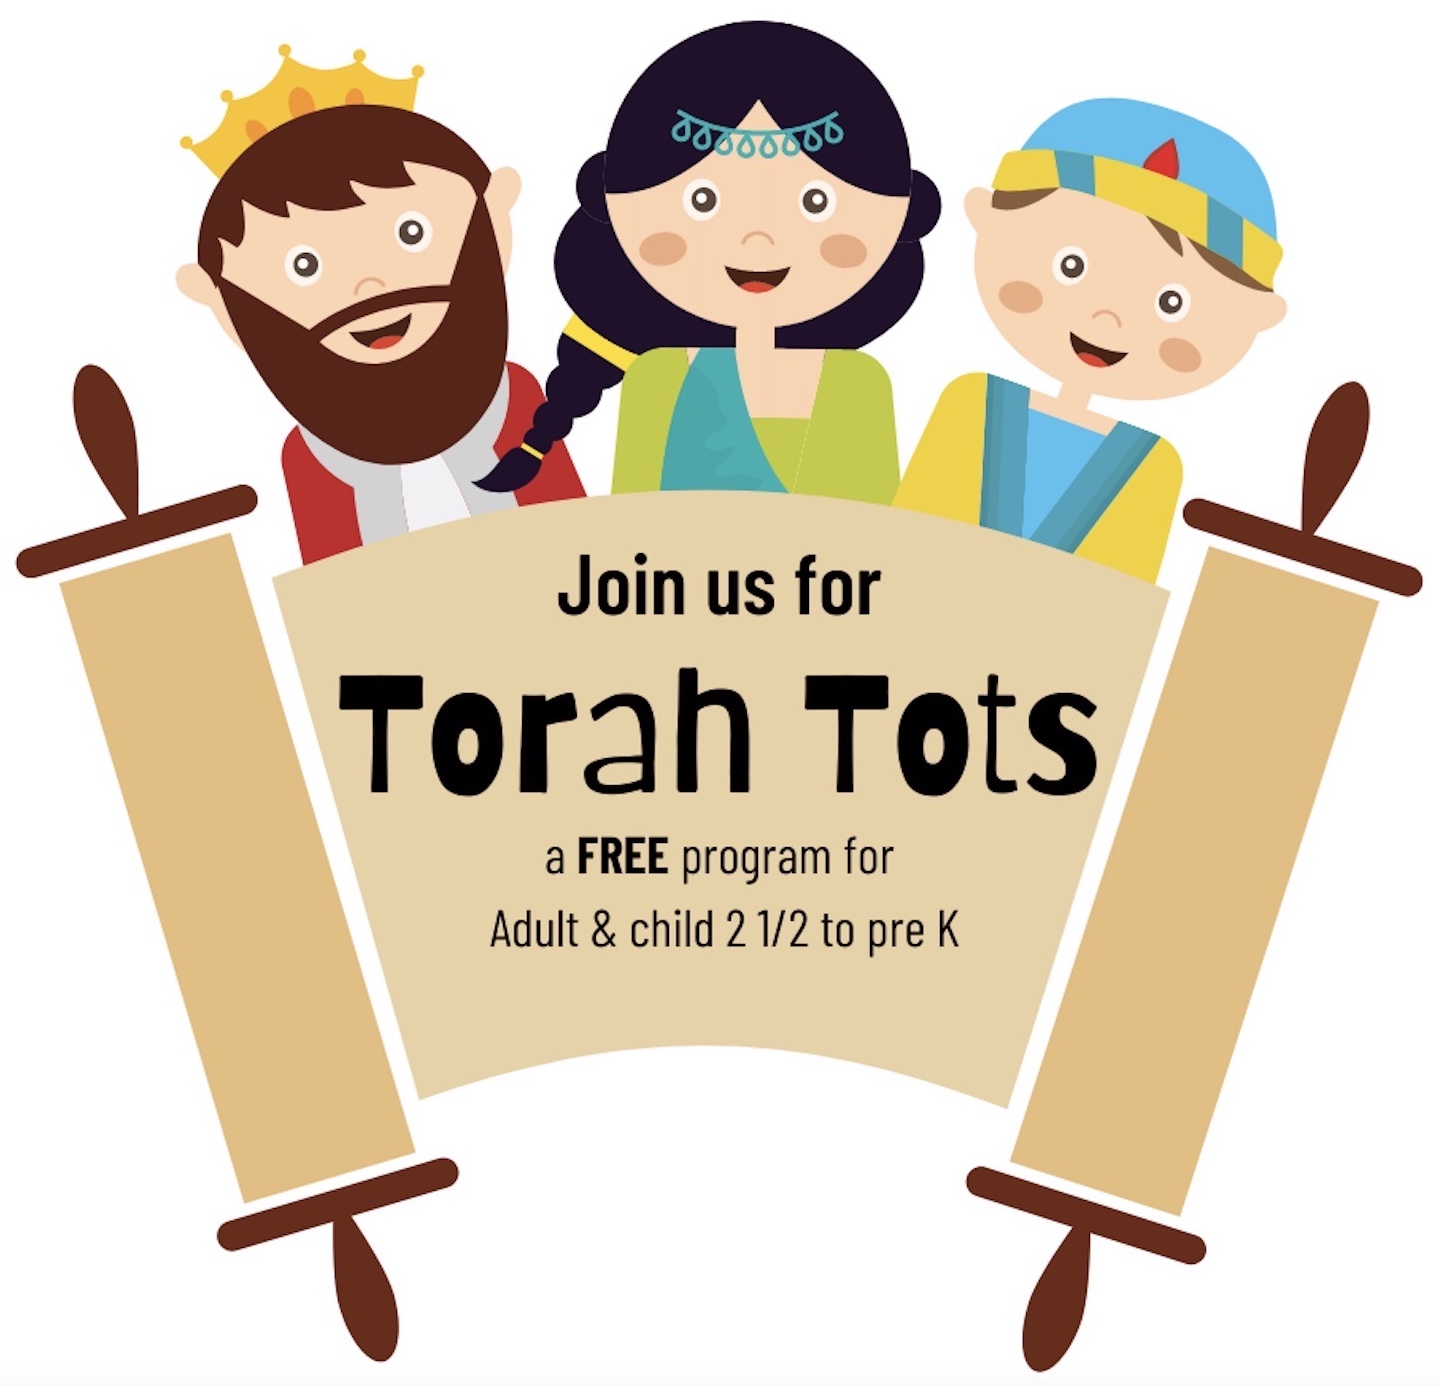 Torah Tots